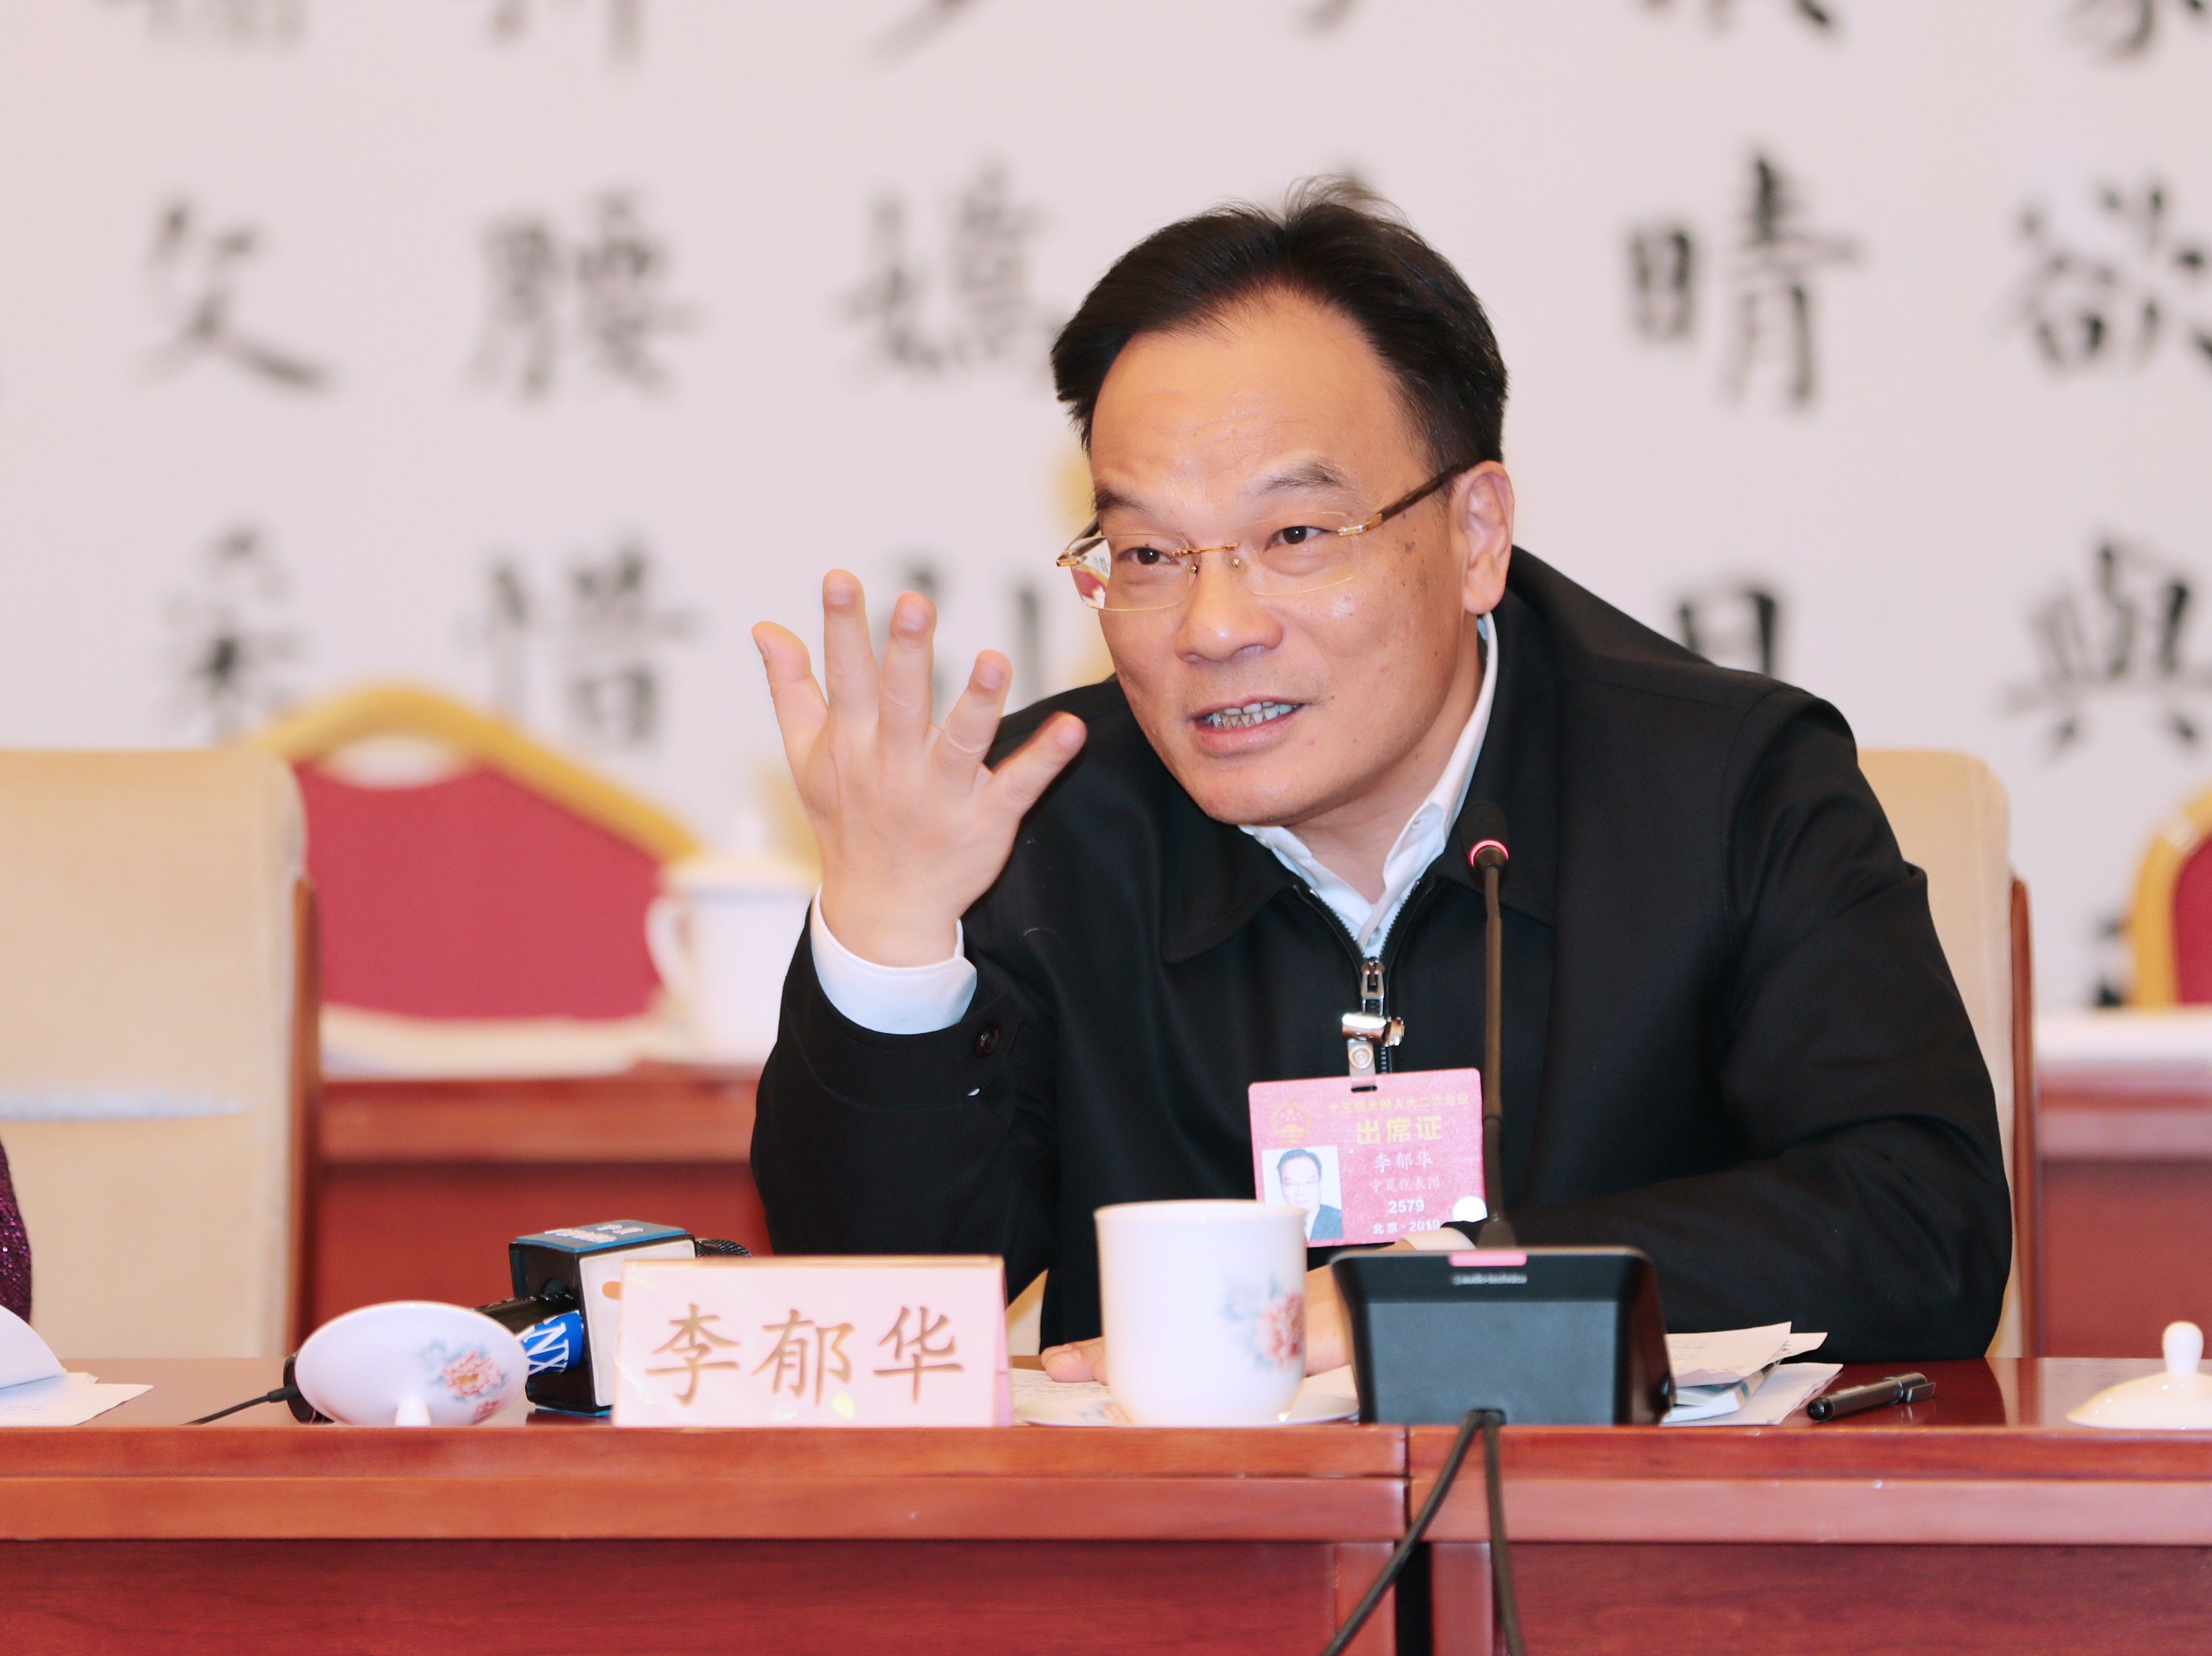 全国人大代表,宁夏石嘴山市市长李郁华在讨论《外商投资法》(草案)时